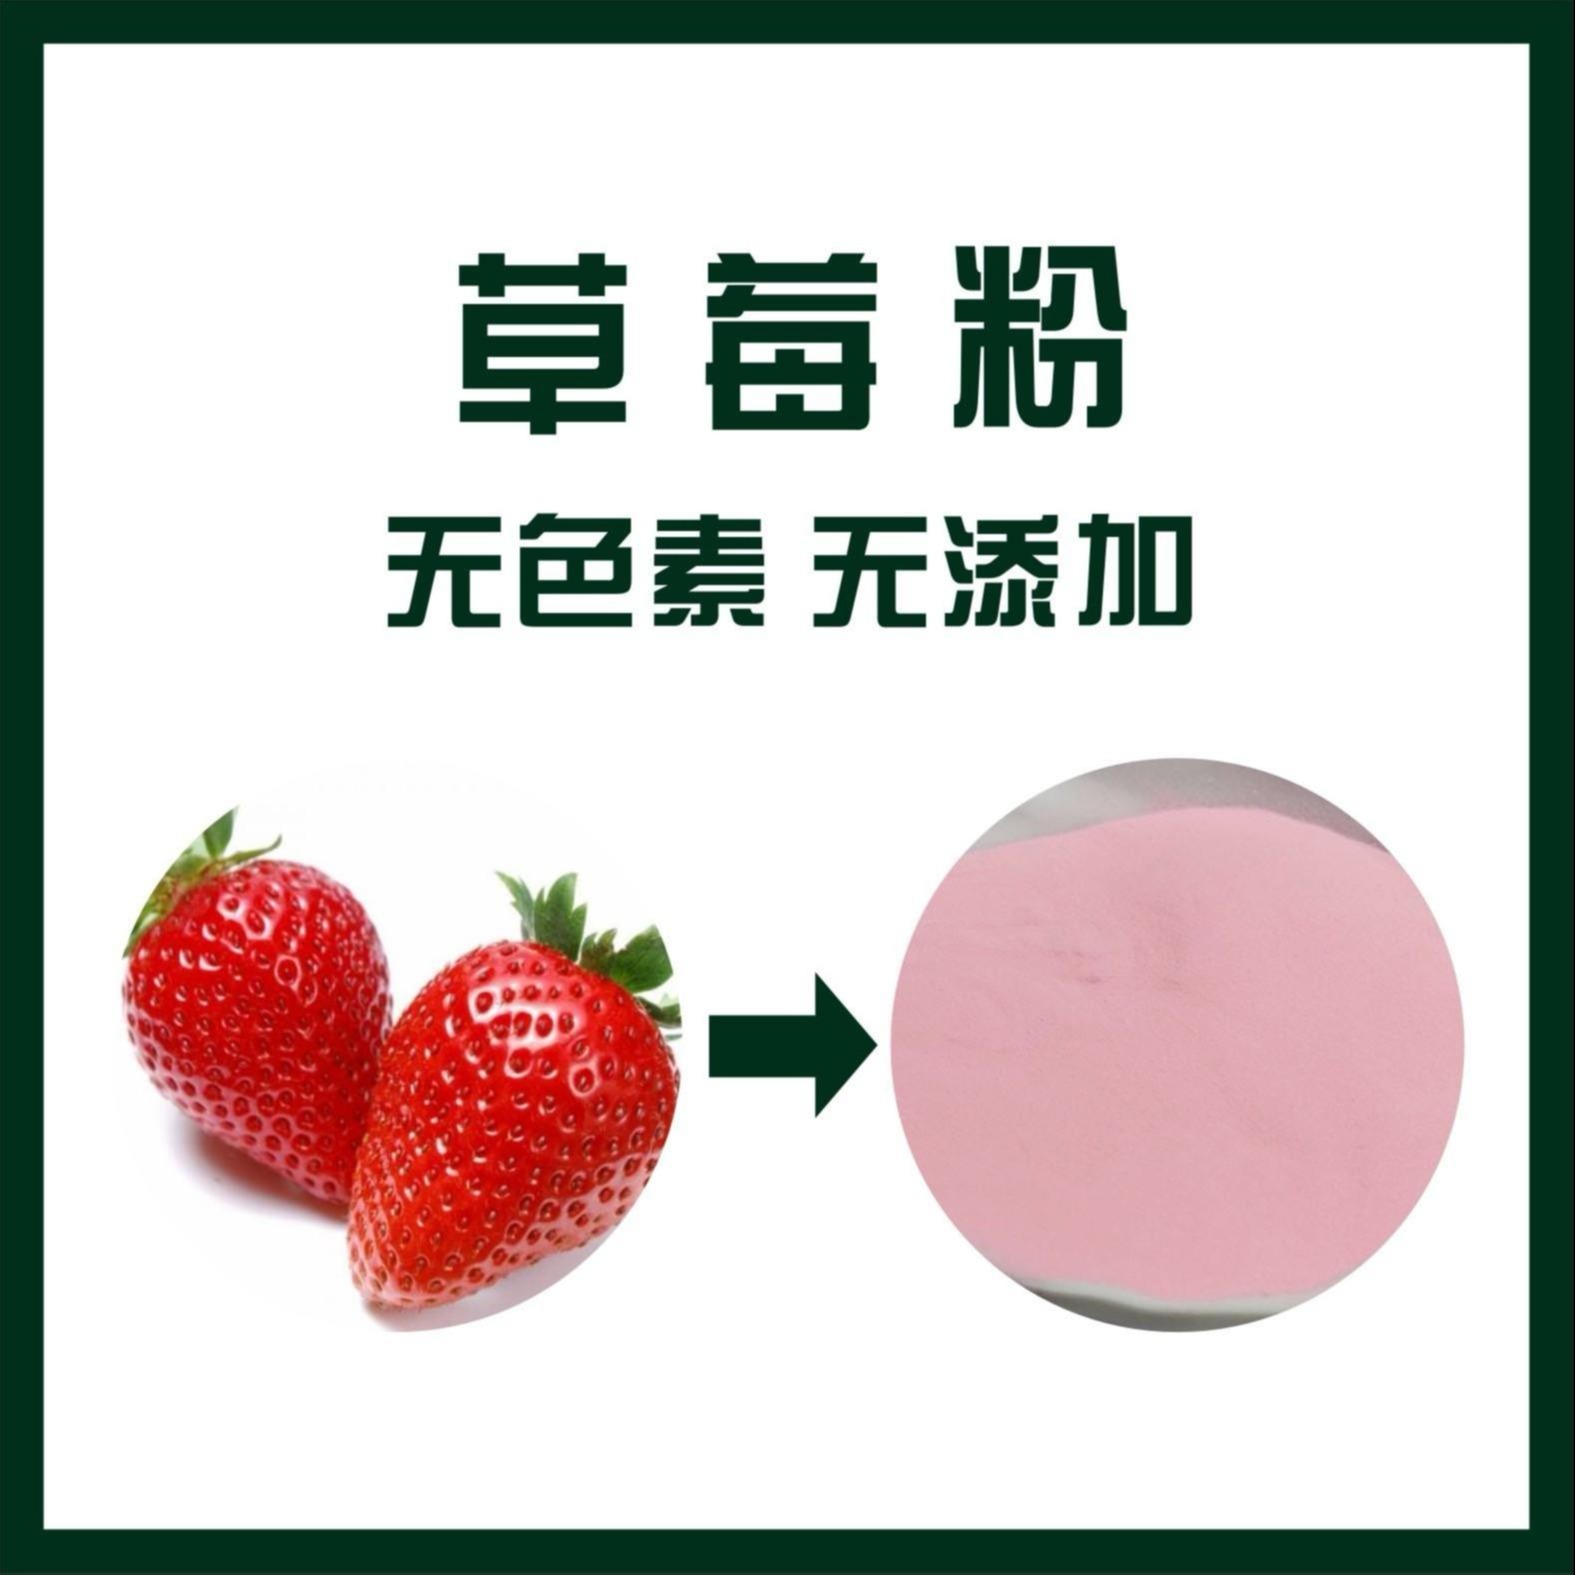 草莓粉 草莓浓缩汁粉 烘焙原料 现货包邮 厂家供应